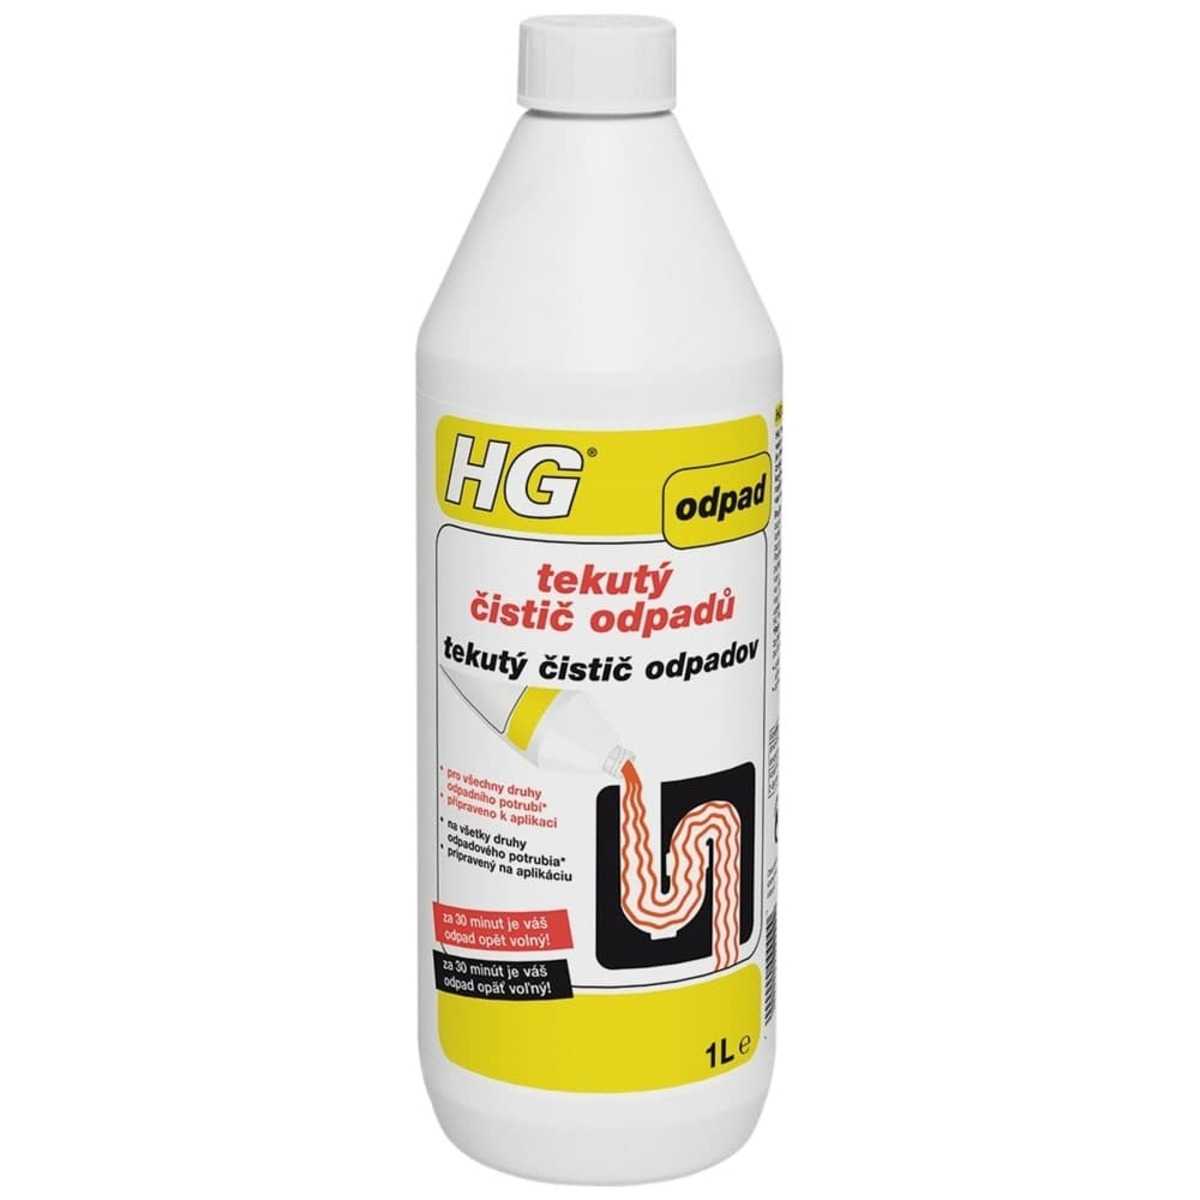 HG tekutý čistič odpadů HGTCO HG